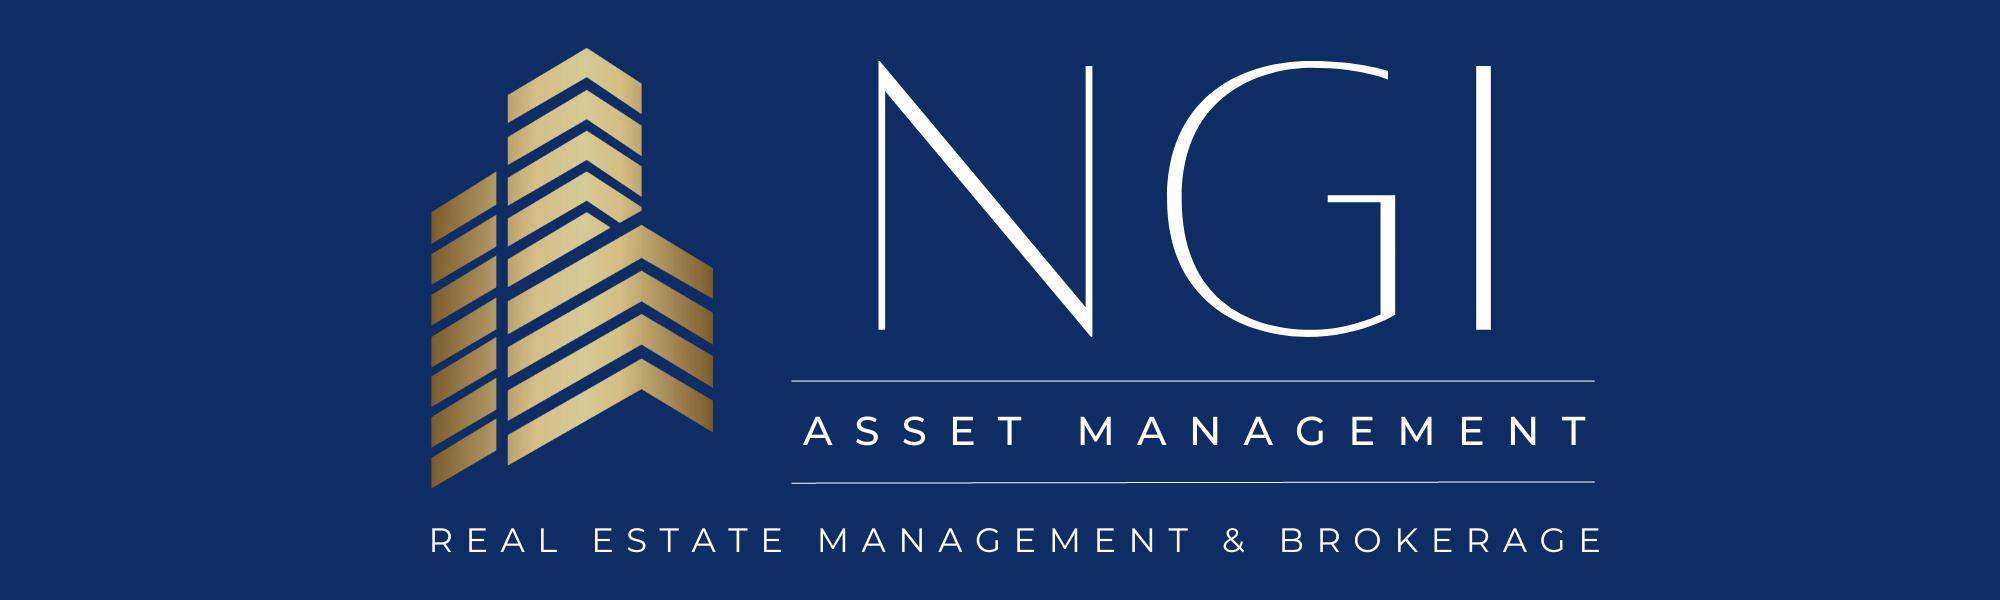 NGI Asset Management logo